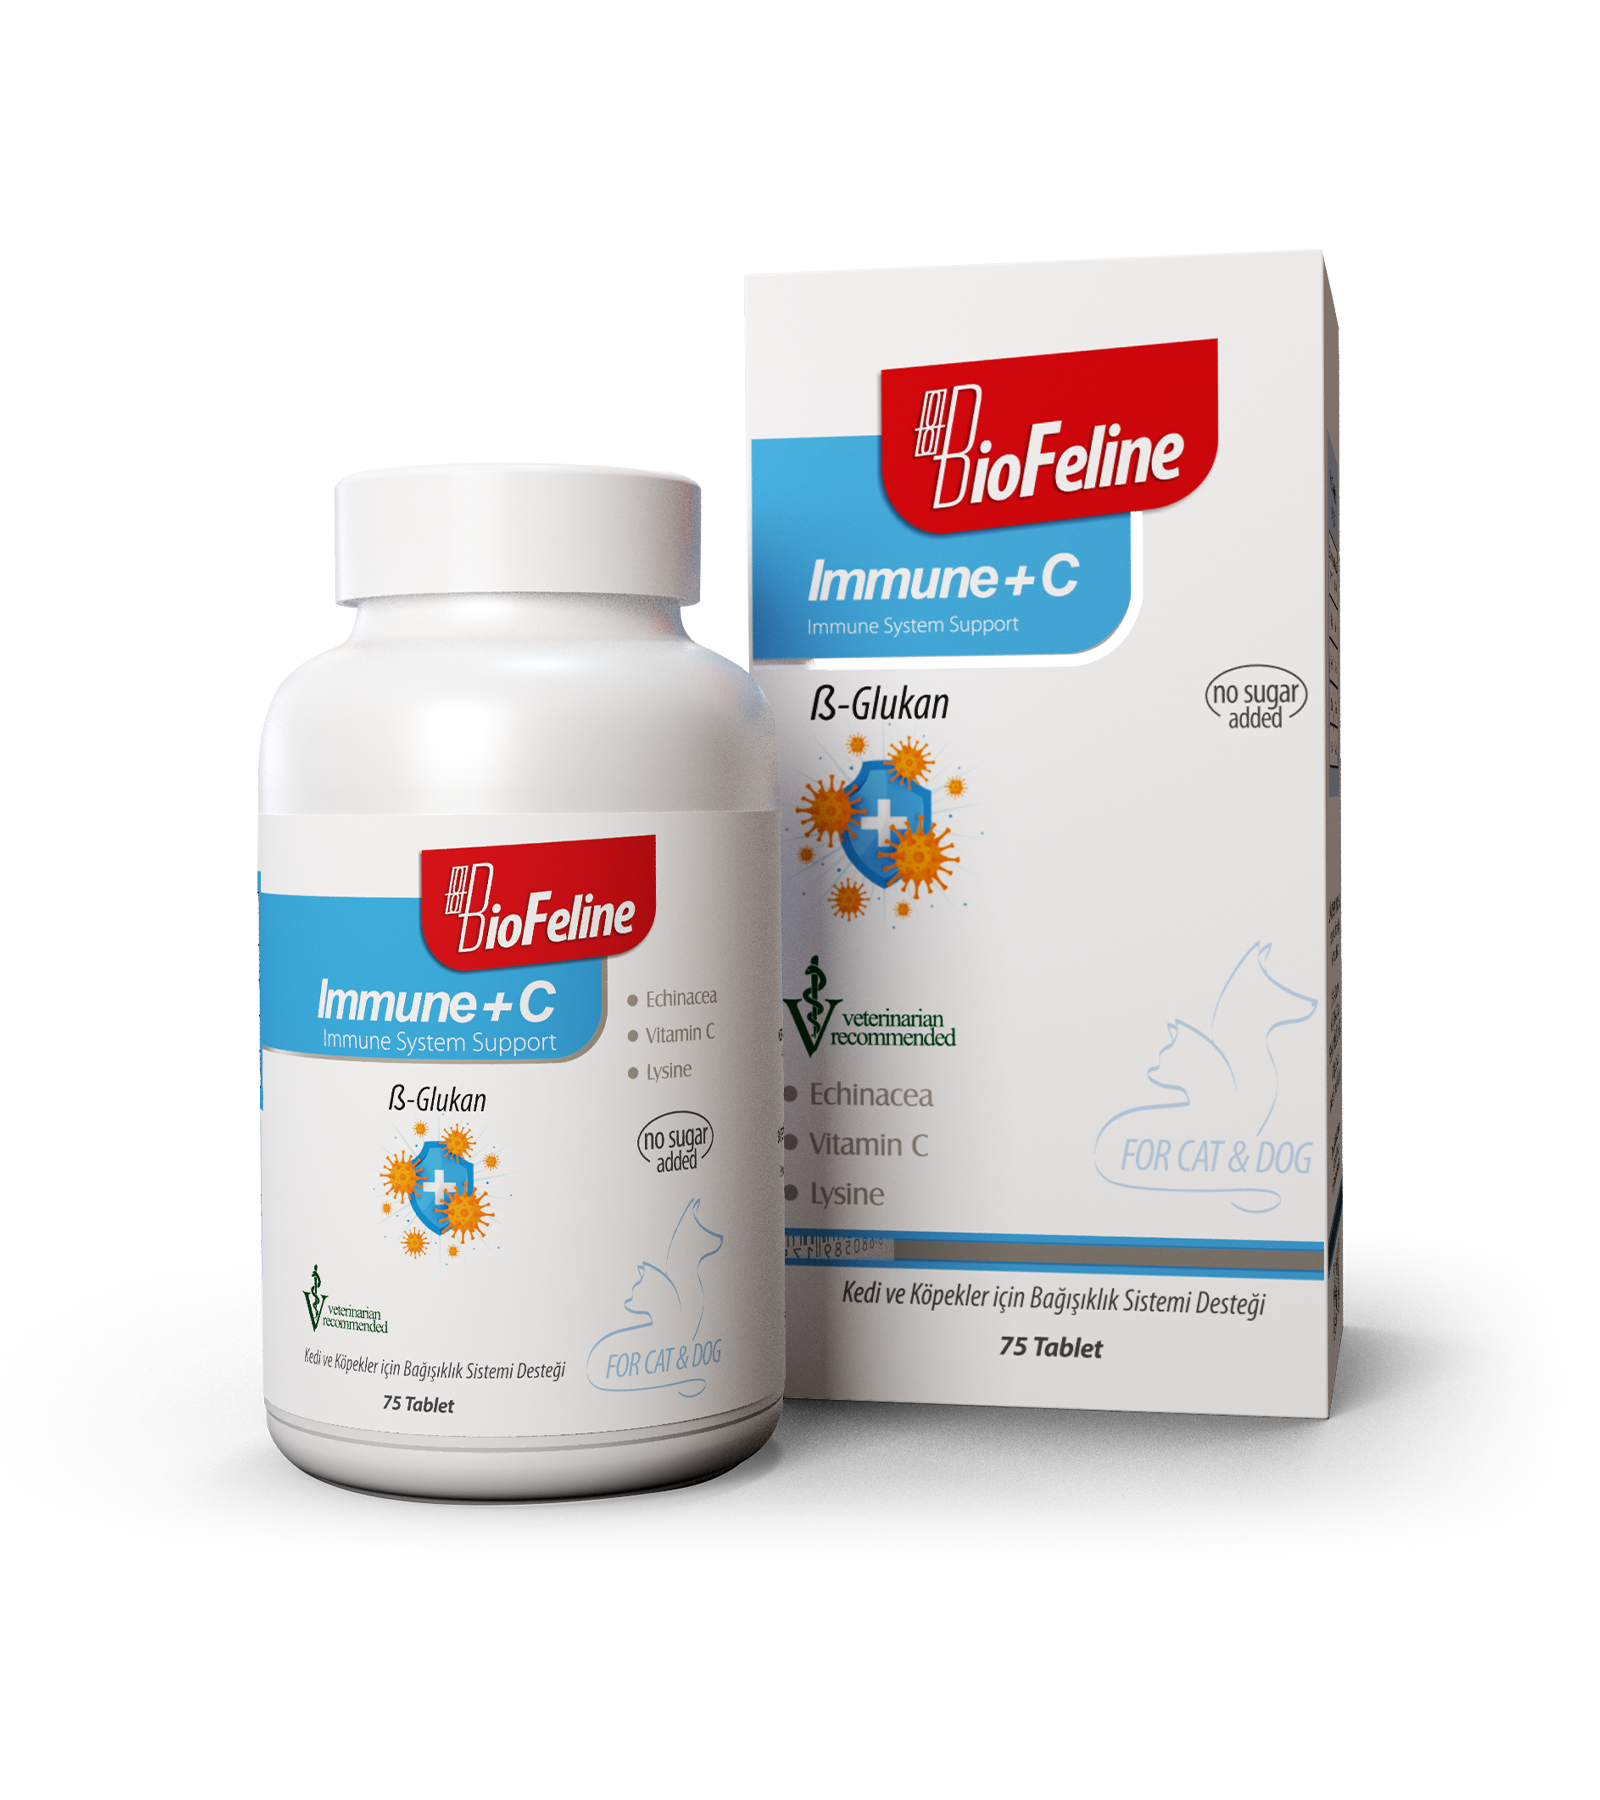 BioFeline Immune+C 75 Tablet (Kedi Ve Köpekler İçin Bağışıklık Sistemini Güçlendiren Bağışıklık Sistemi Destek Tableti)